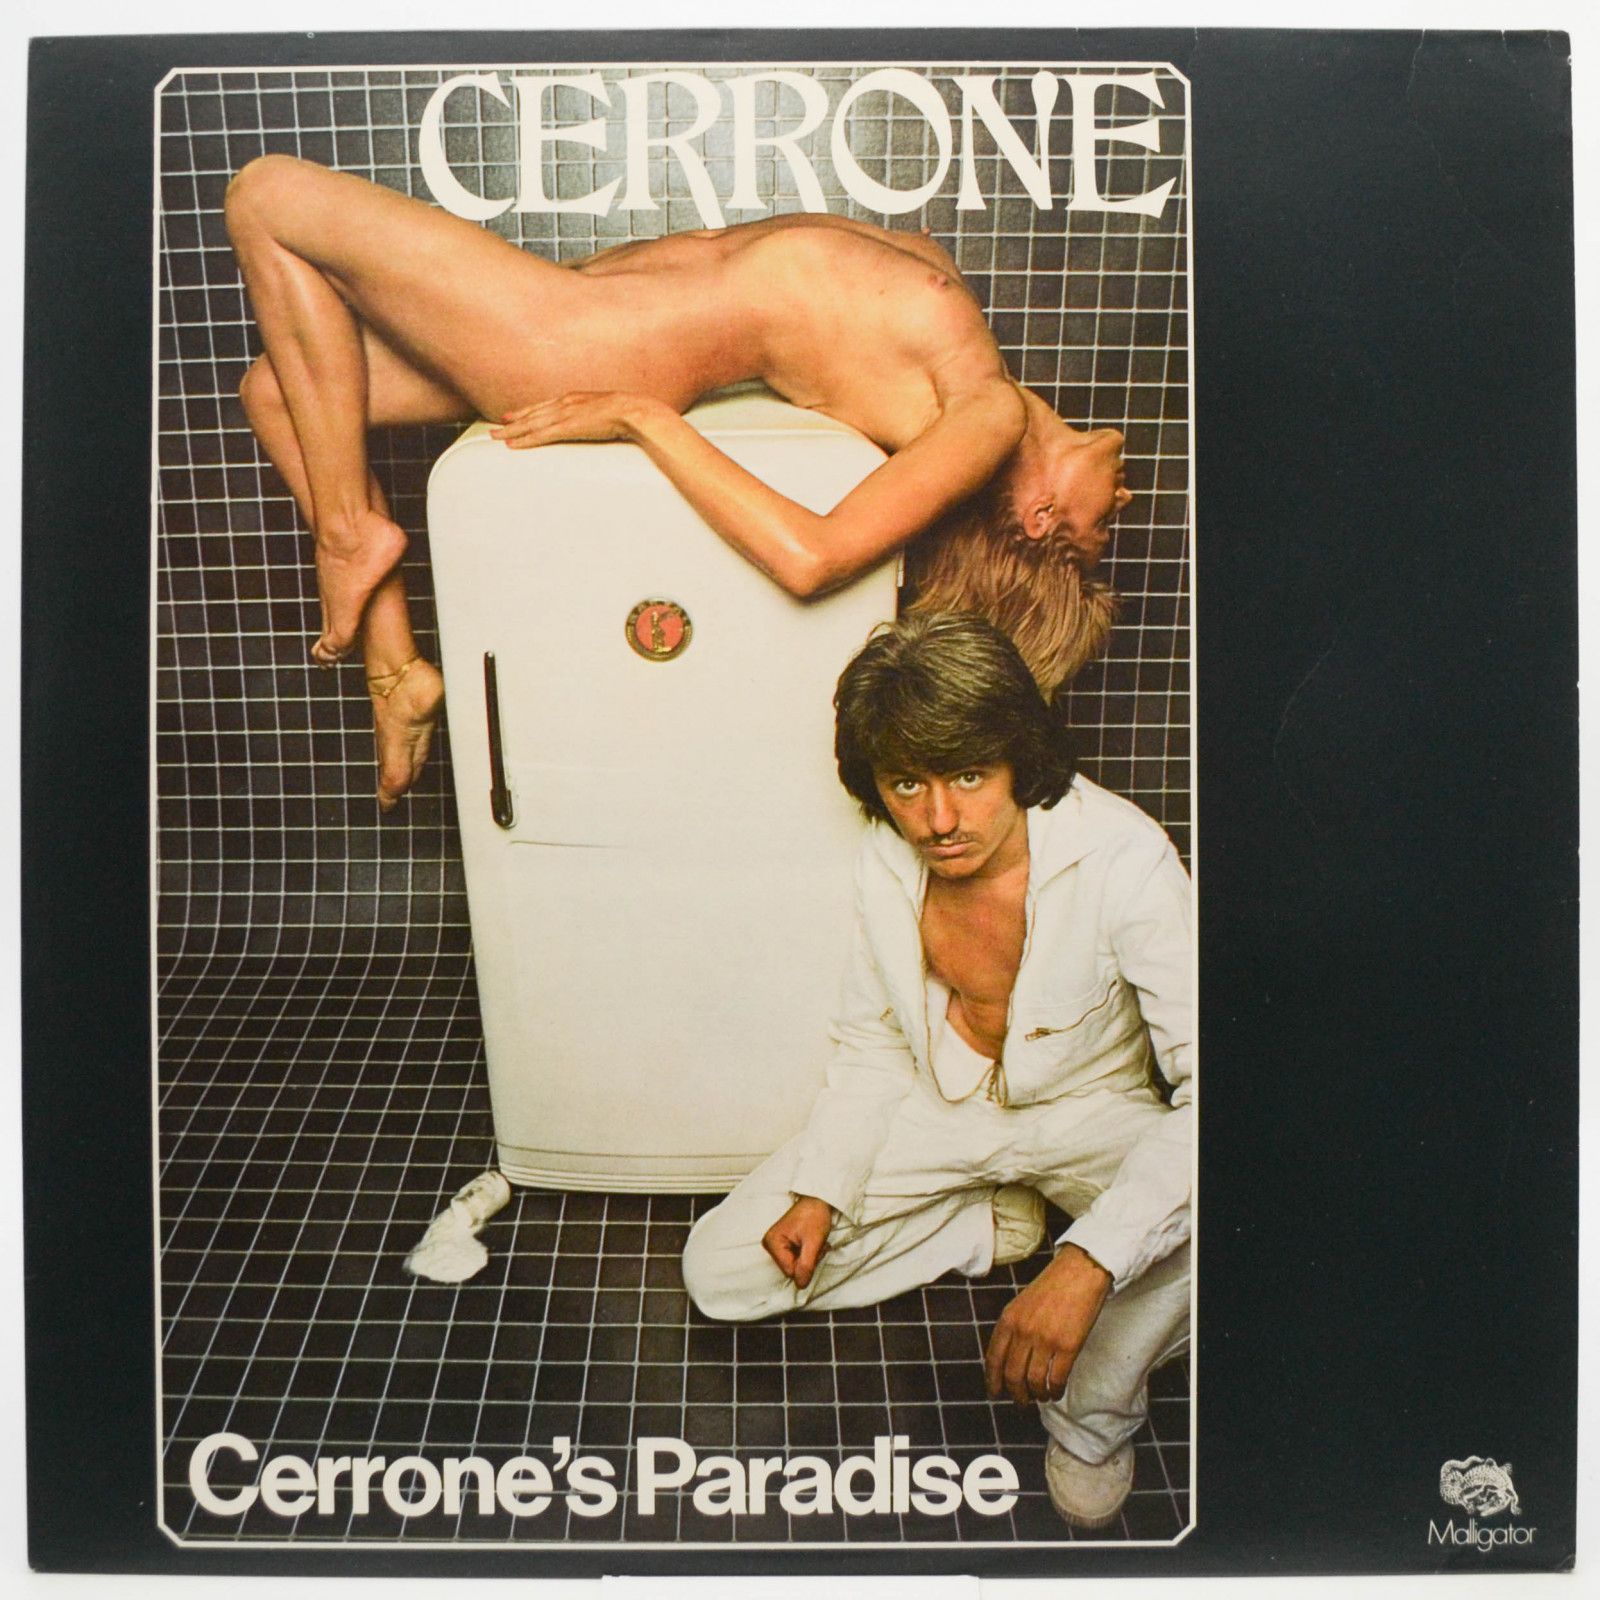 Cerrone — Cerrone's Paradise (UK), 1977